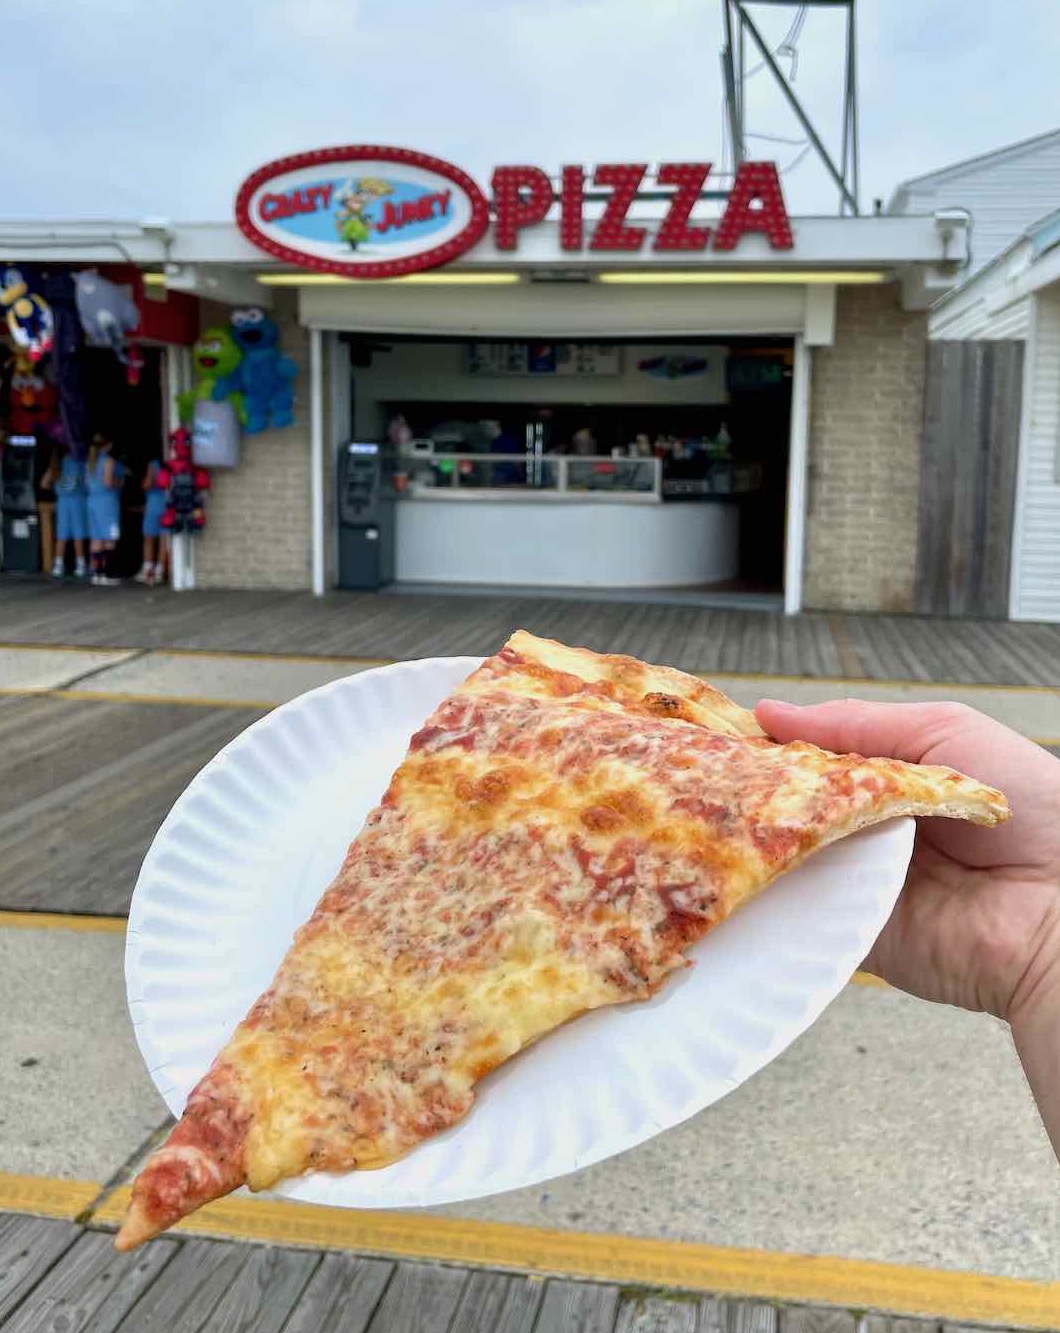 wildwood pizza tour 2022